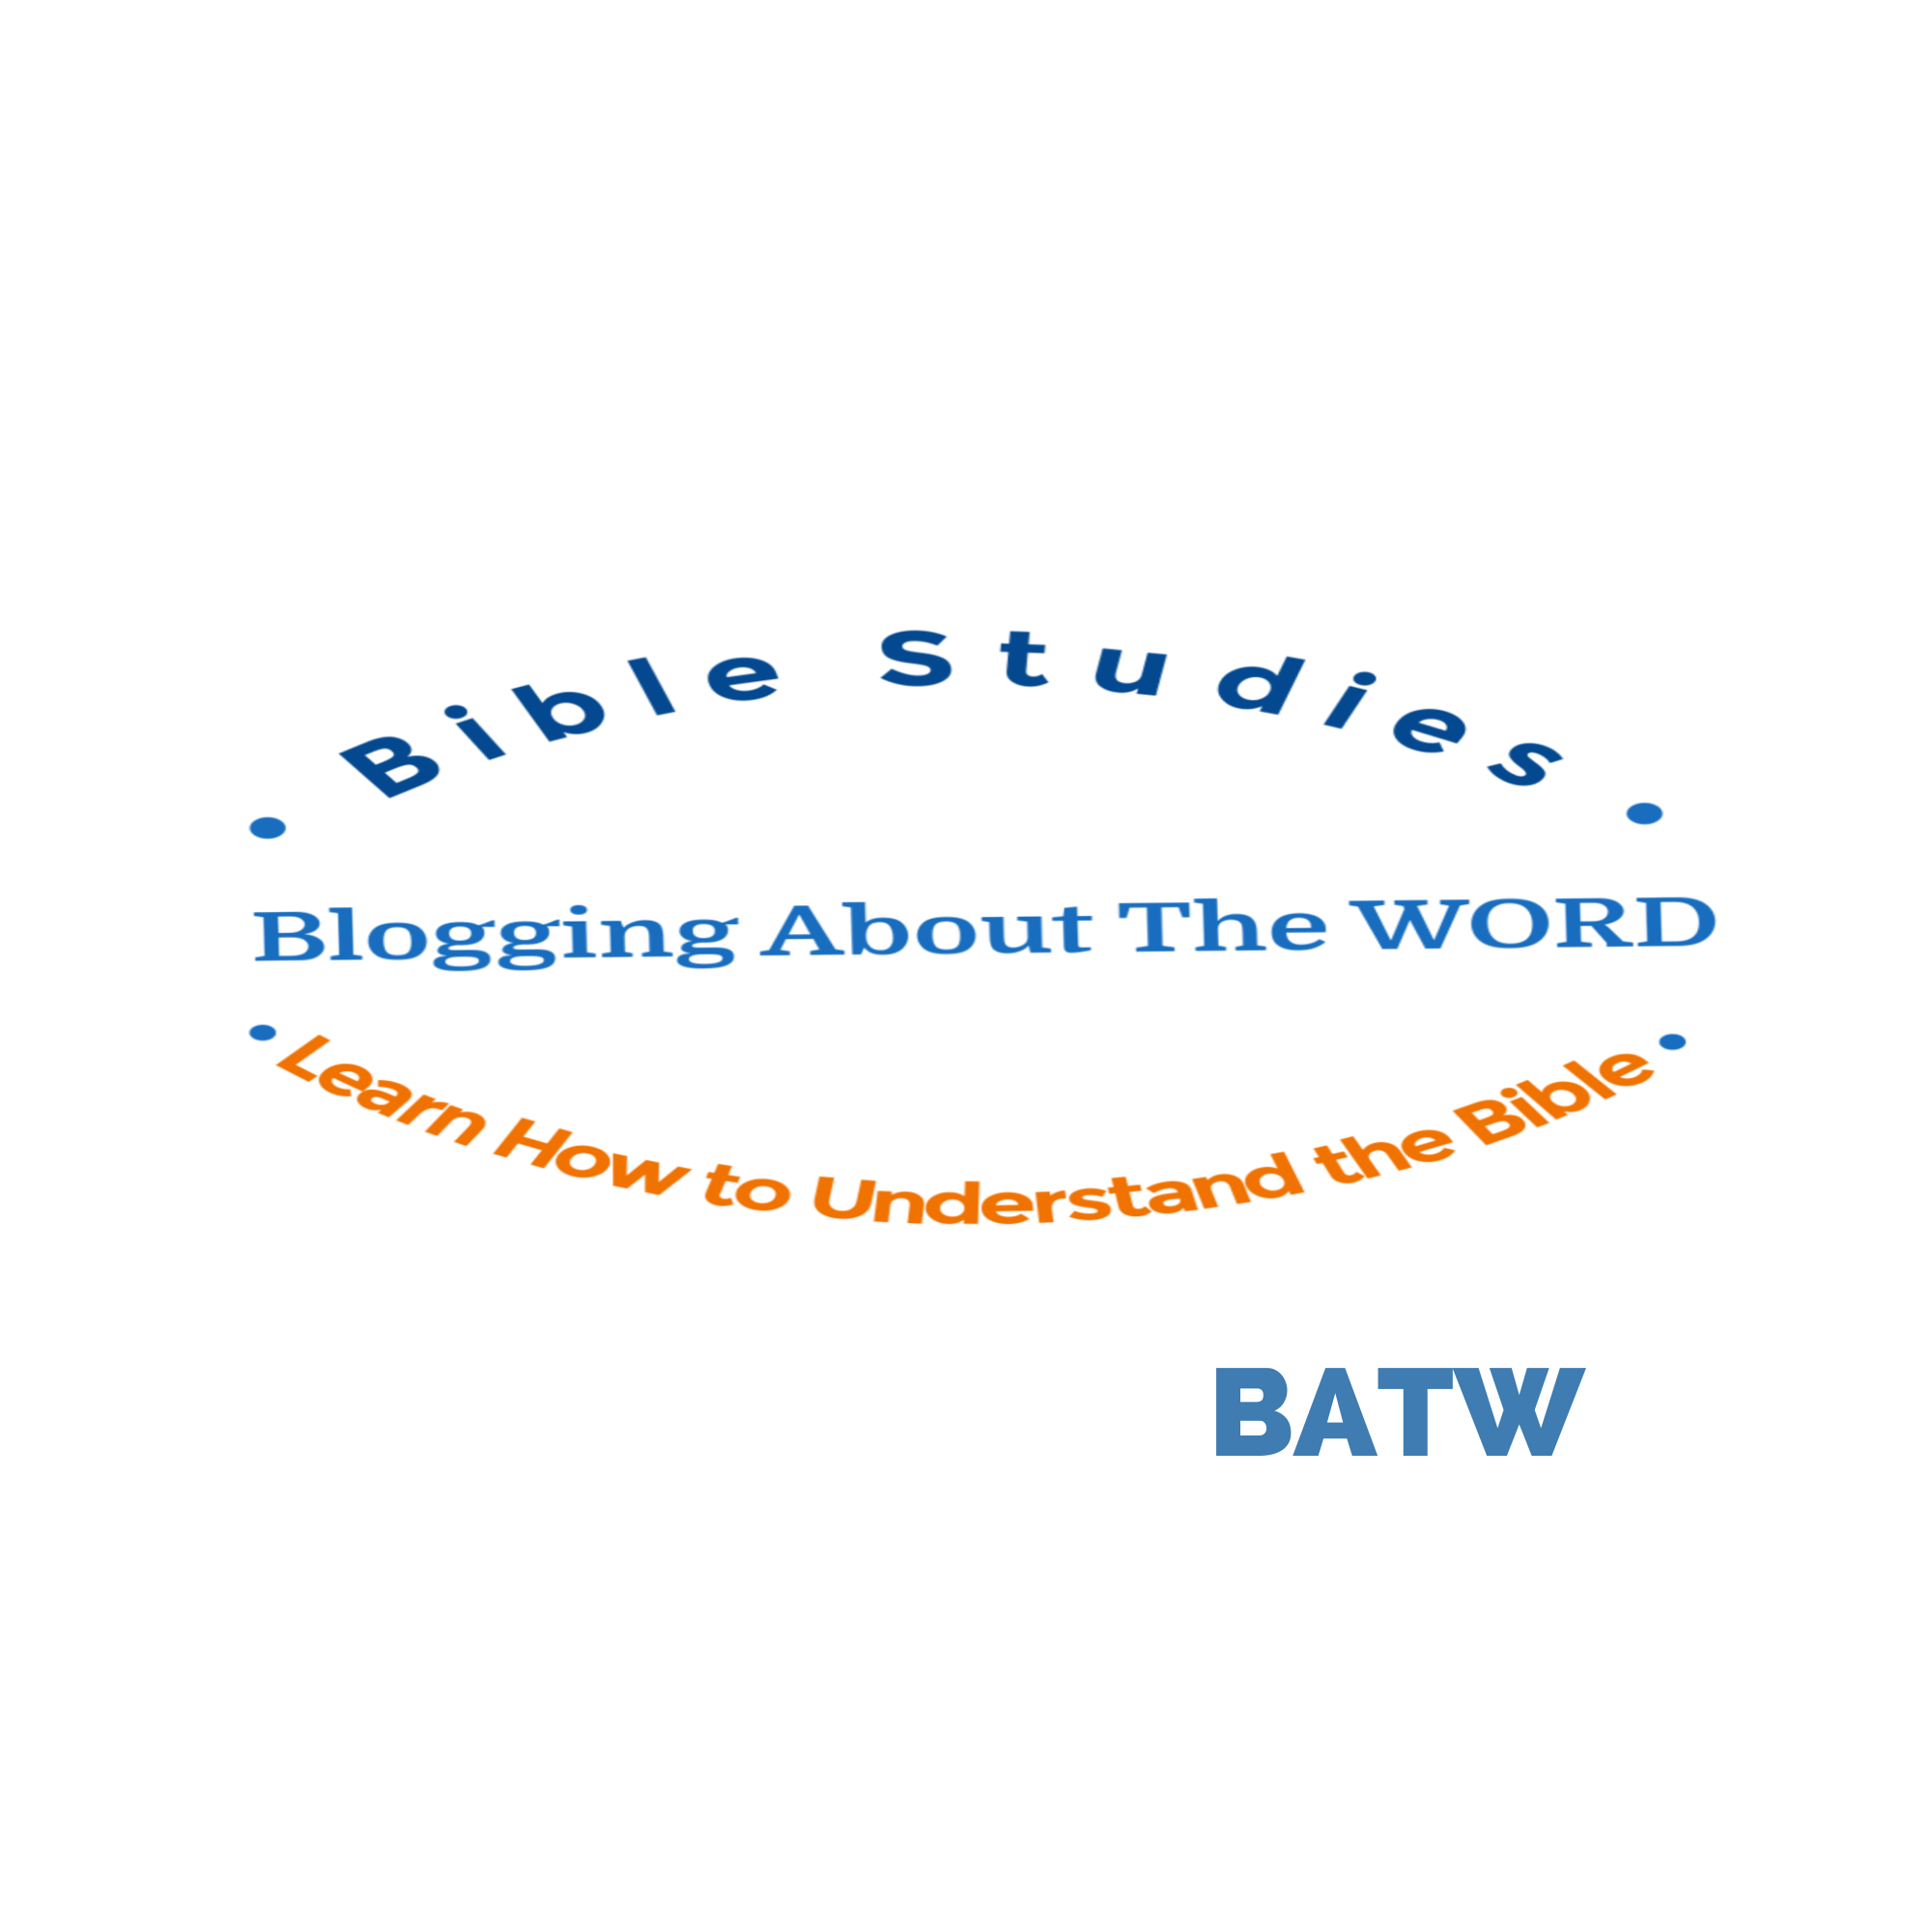 batw-official-square-logo